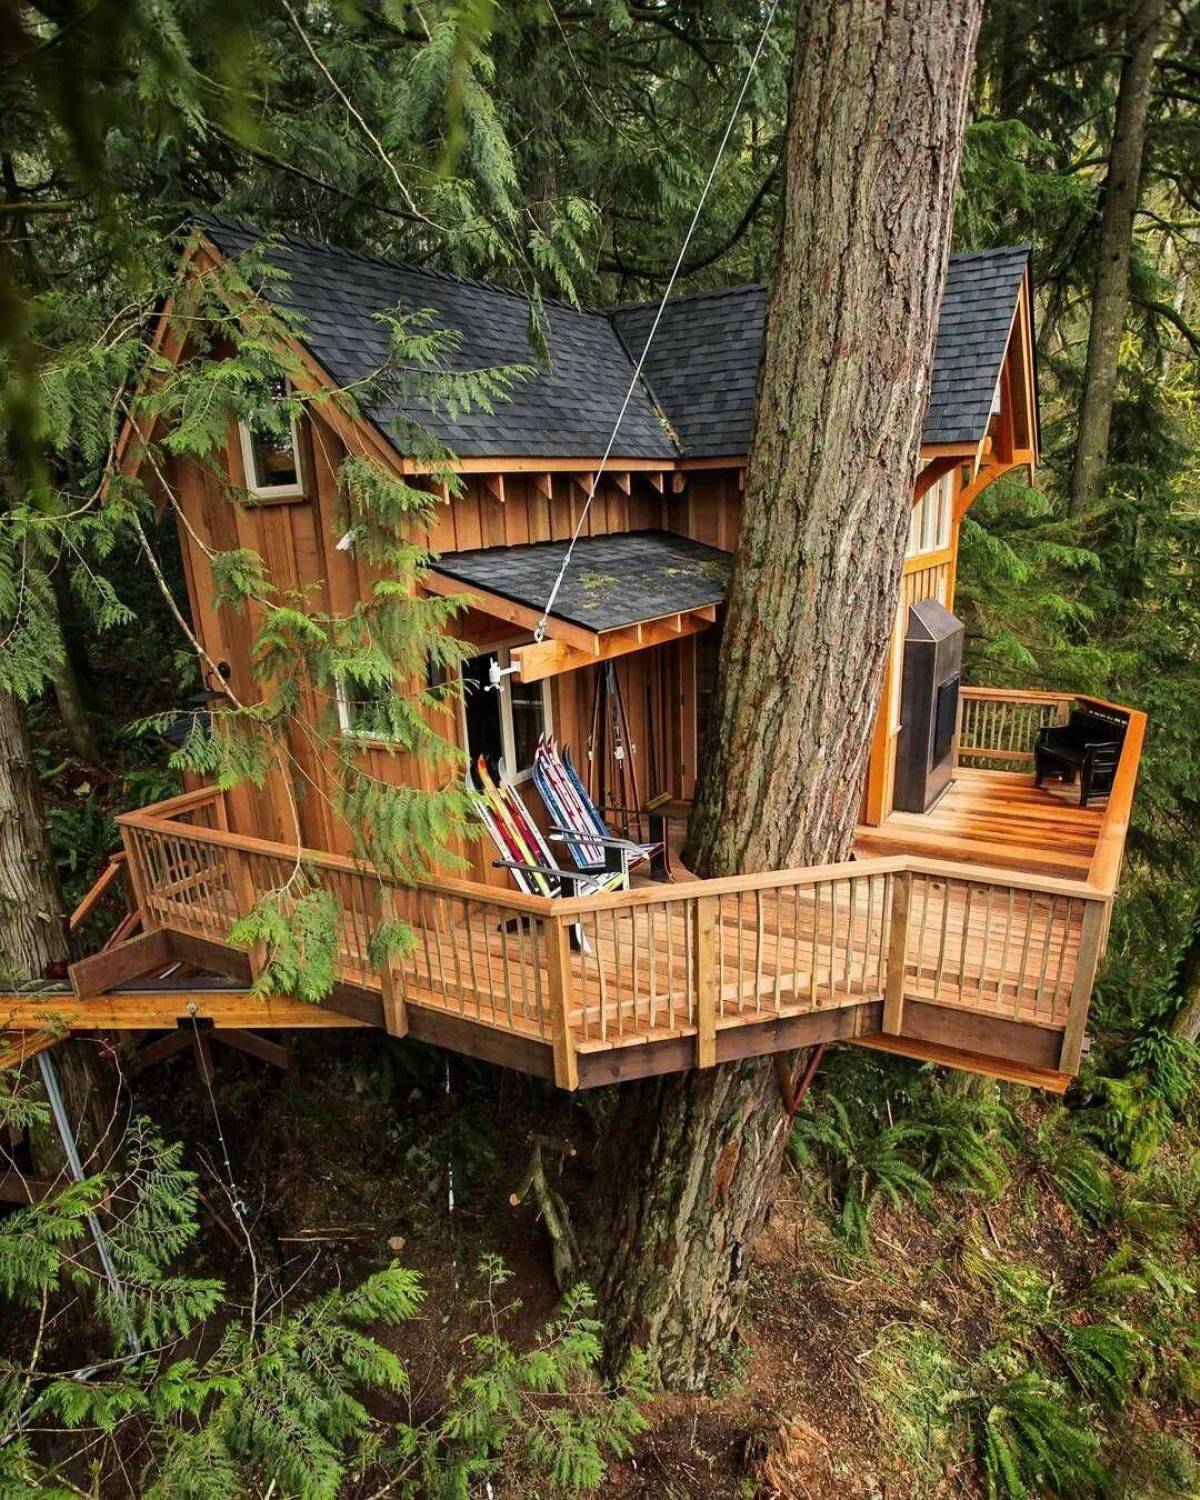 Домик на дереве votv. Hobbit Treehouse, США. Дом на деревьях Шотландия климанрюк. Rumah pohon Treehouse отель. Д дом.